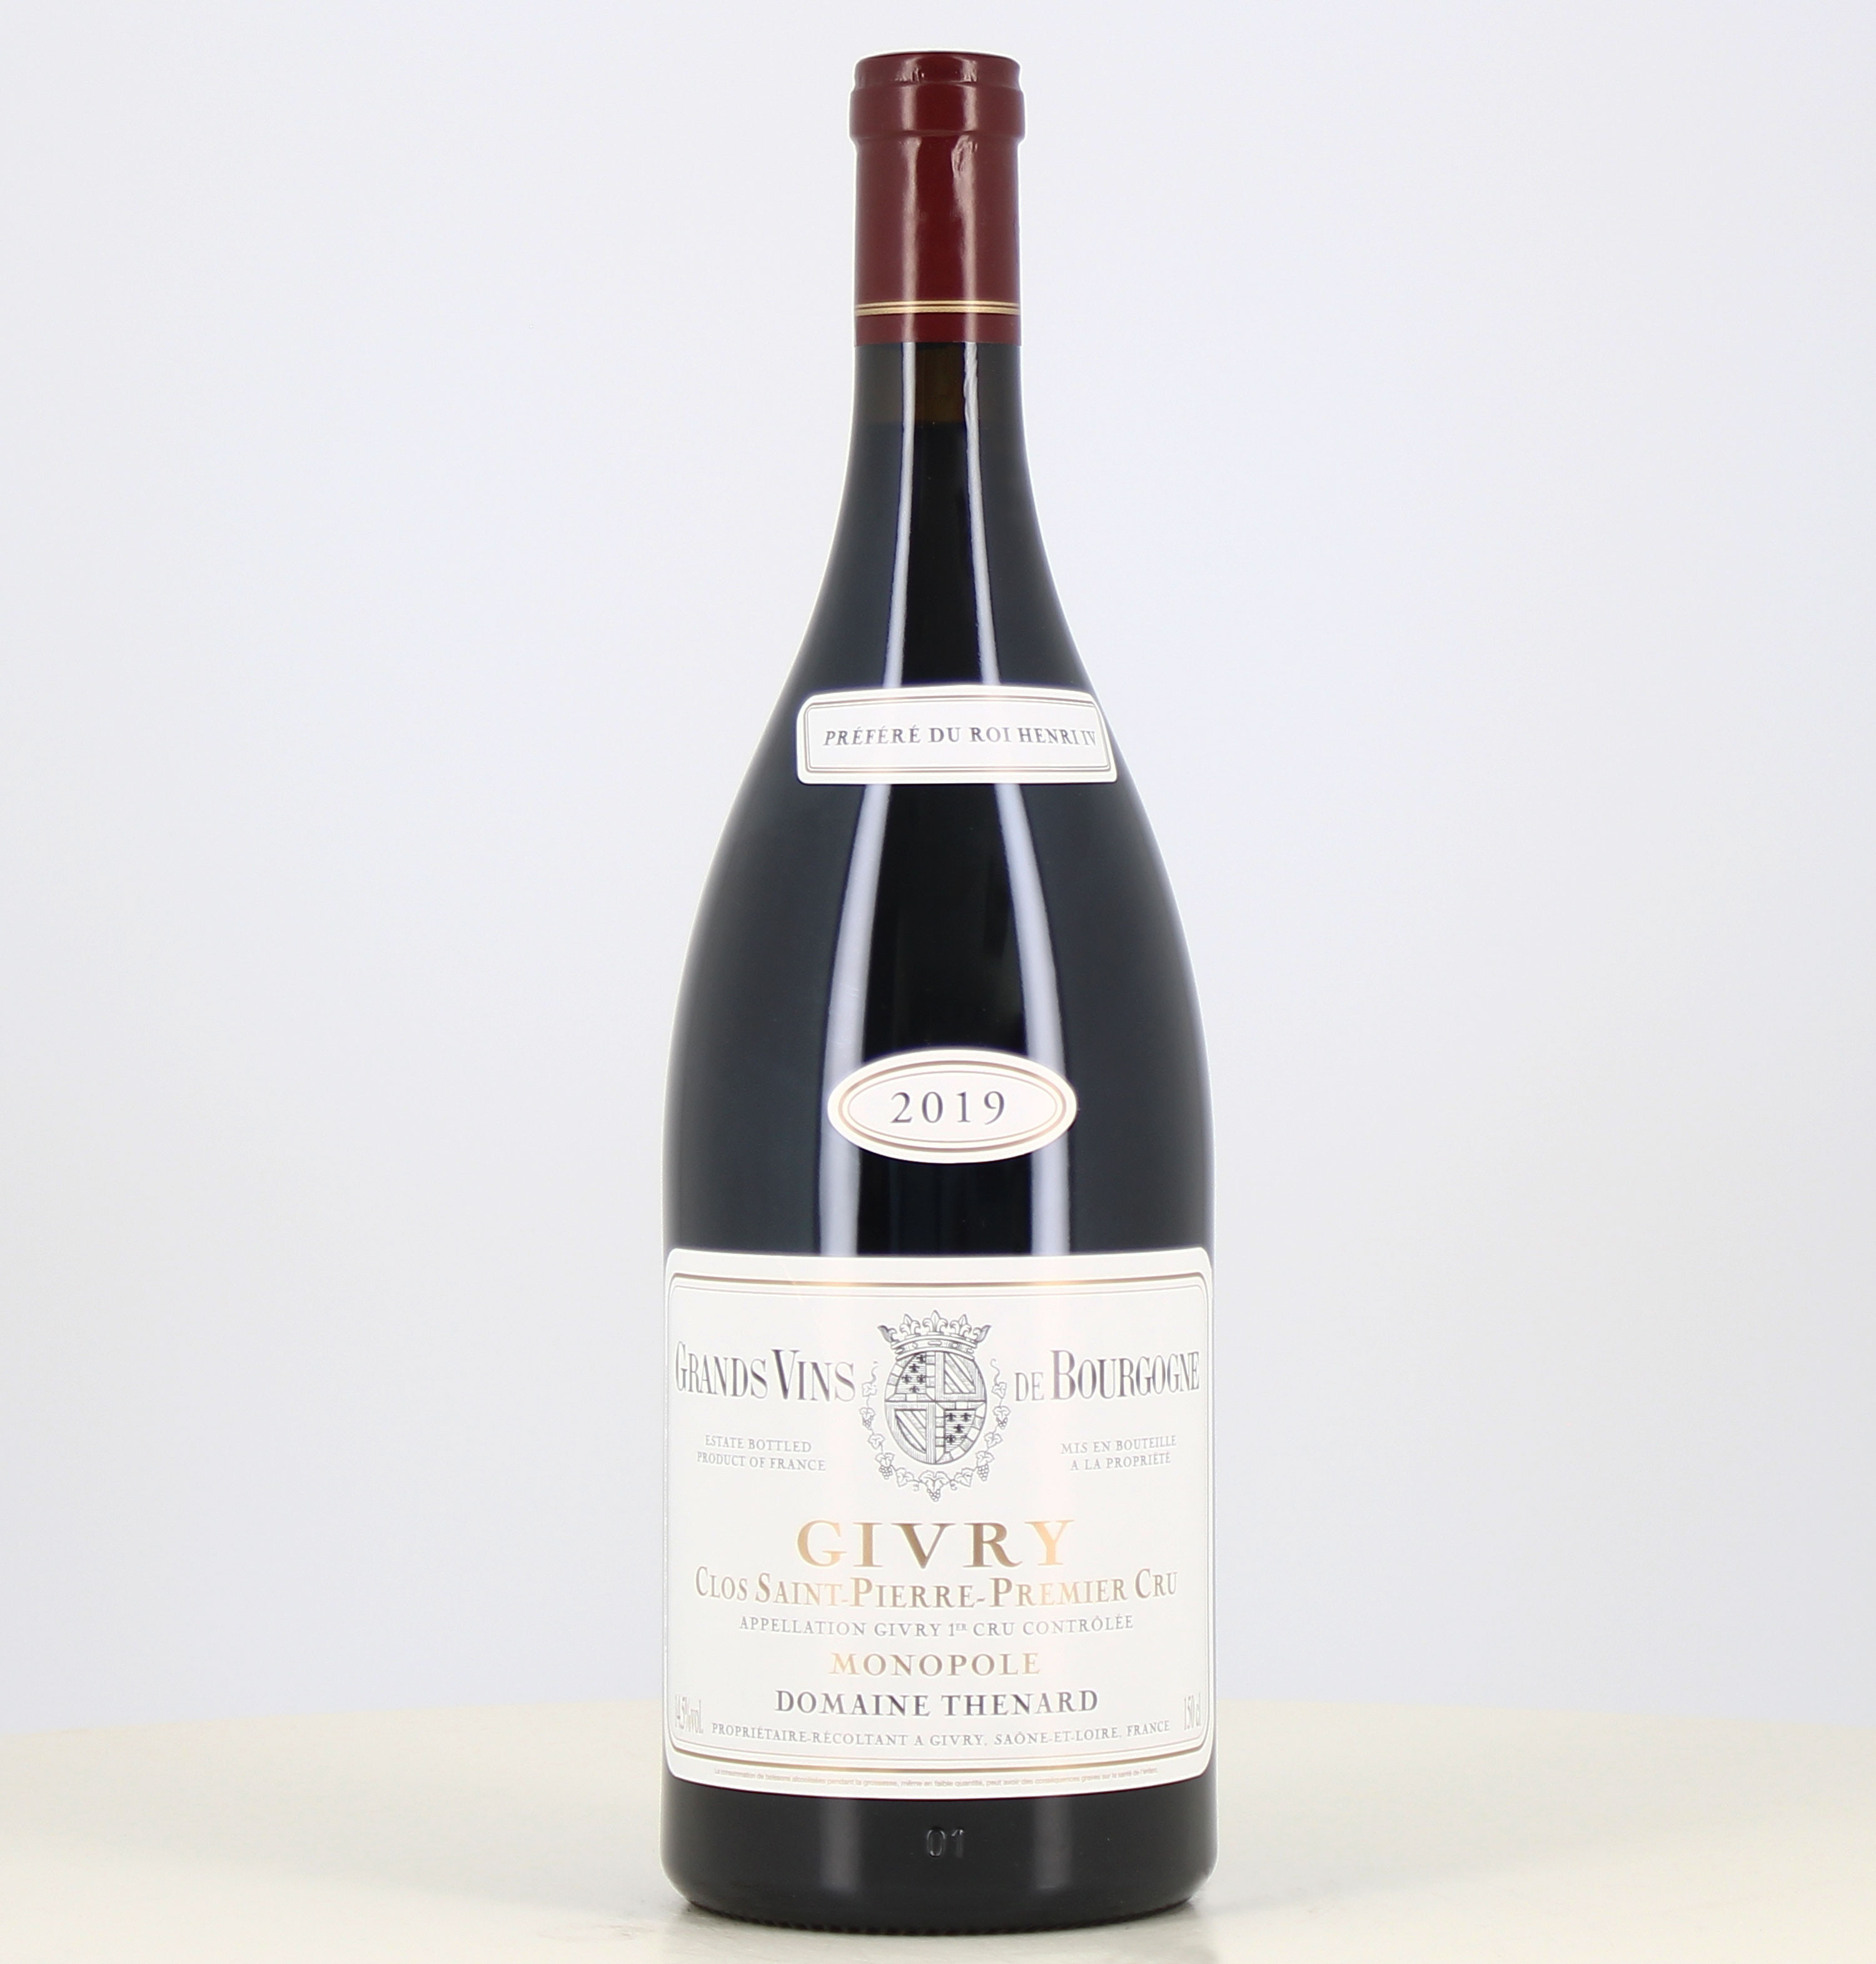 Magnum de vino tinto Givry 1er cru Saint-Pierre Monopole domaine thenard 2019 